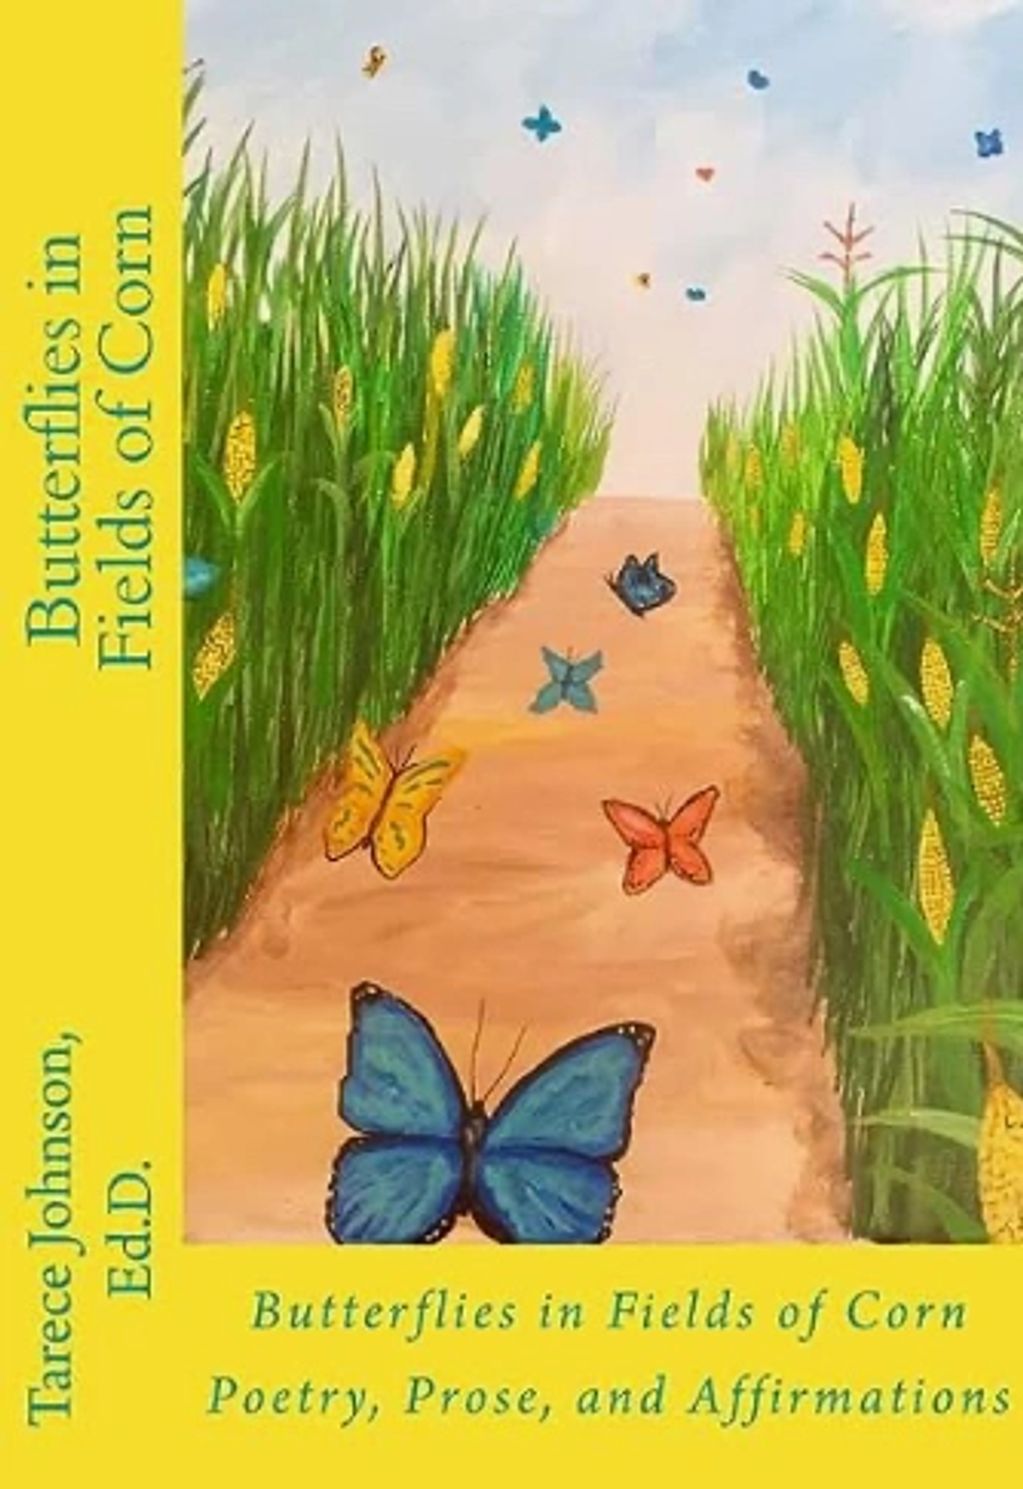 Butterflies in Fields of Corn